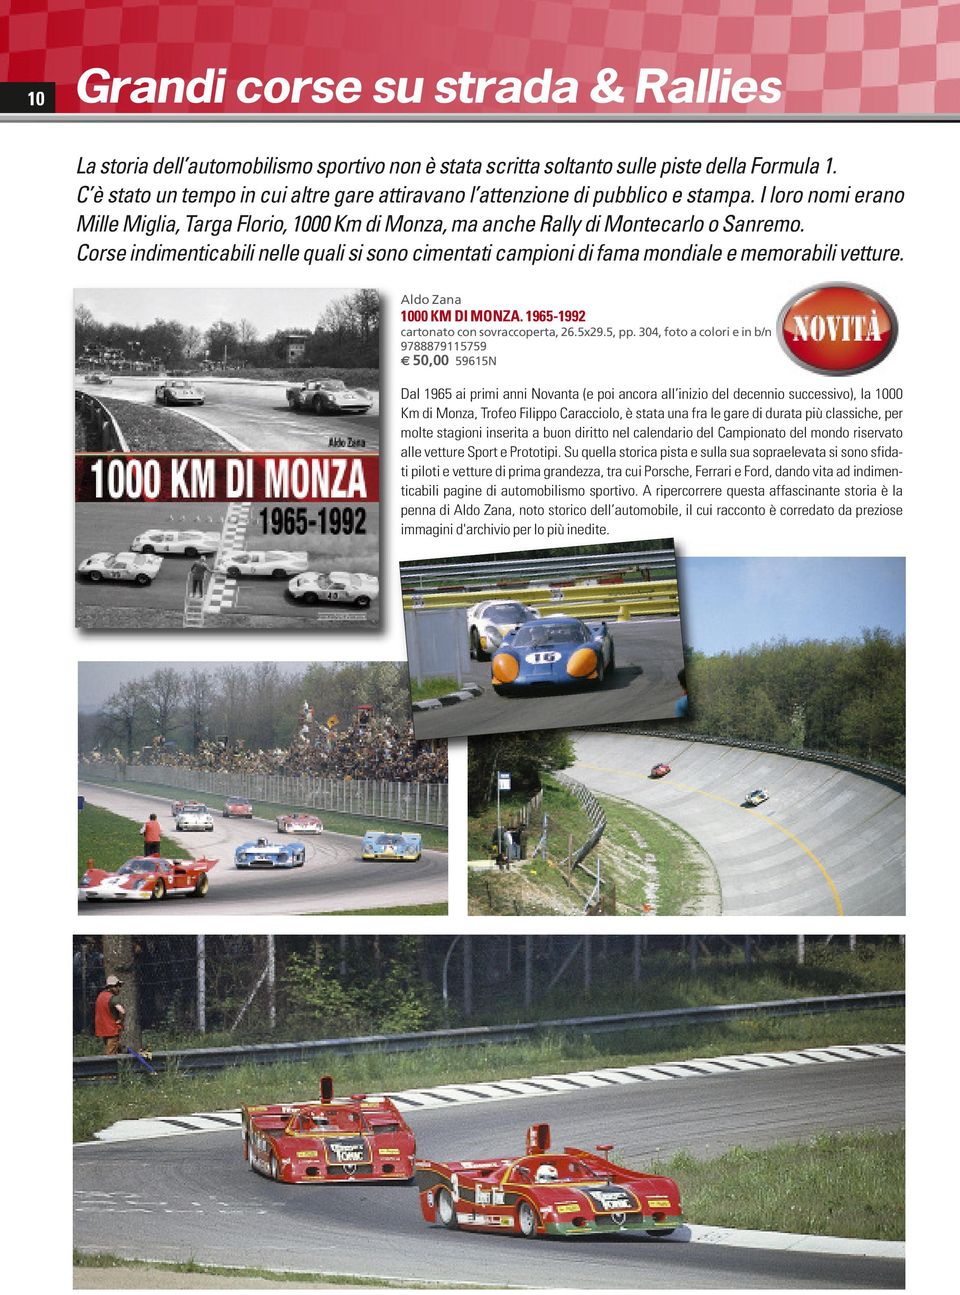 Corse indimenticabili nelle quali si sono cimentati campioni di fama mondiale e memorabili vetture. Aldo Zana 1000 KM DI MONZA. 1965-1992 26.5x29.5, pp.